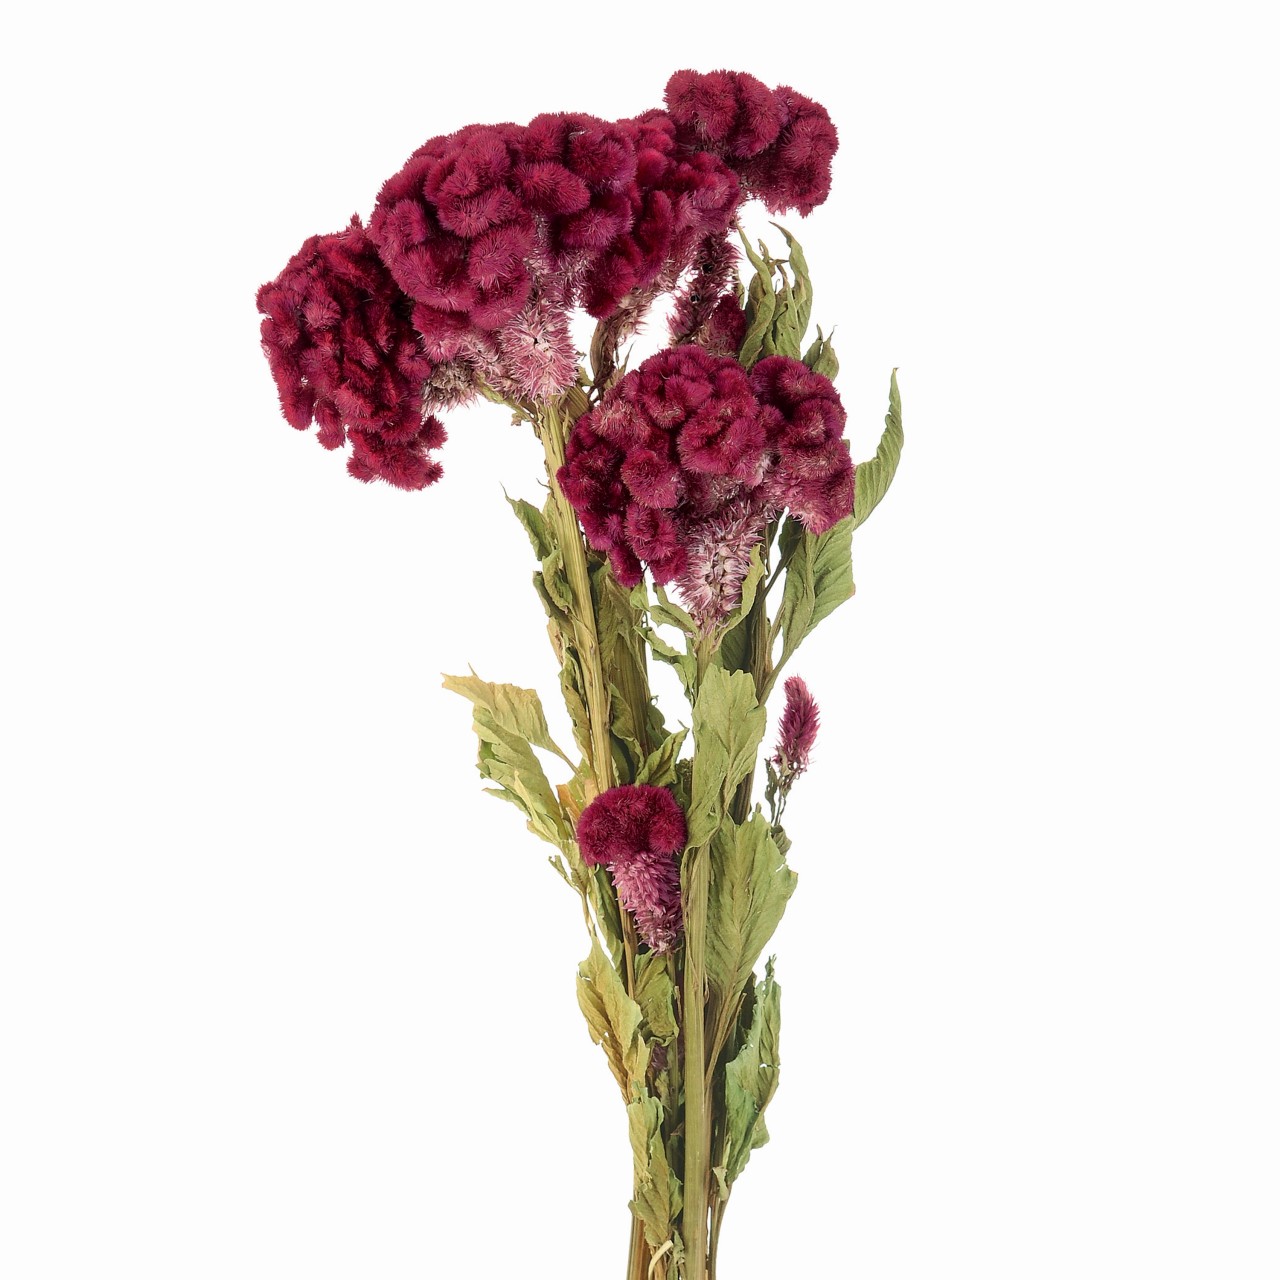 マイフラ 通販 風の花 ケイトウ枝付き レッド ドライフラワー ナチュラル Dn 003 レッド ドライフラワー ナチュラル素材 全国にmagiq 花器 花資材などをお届けします